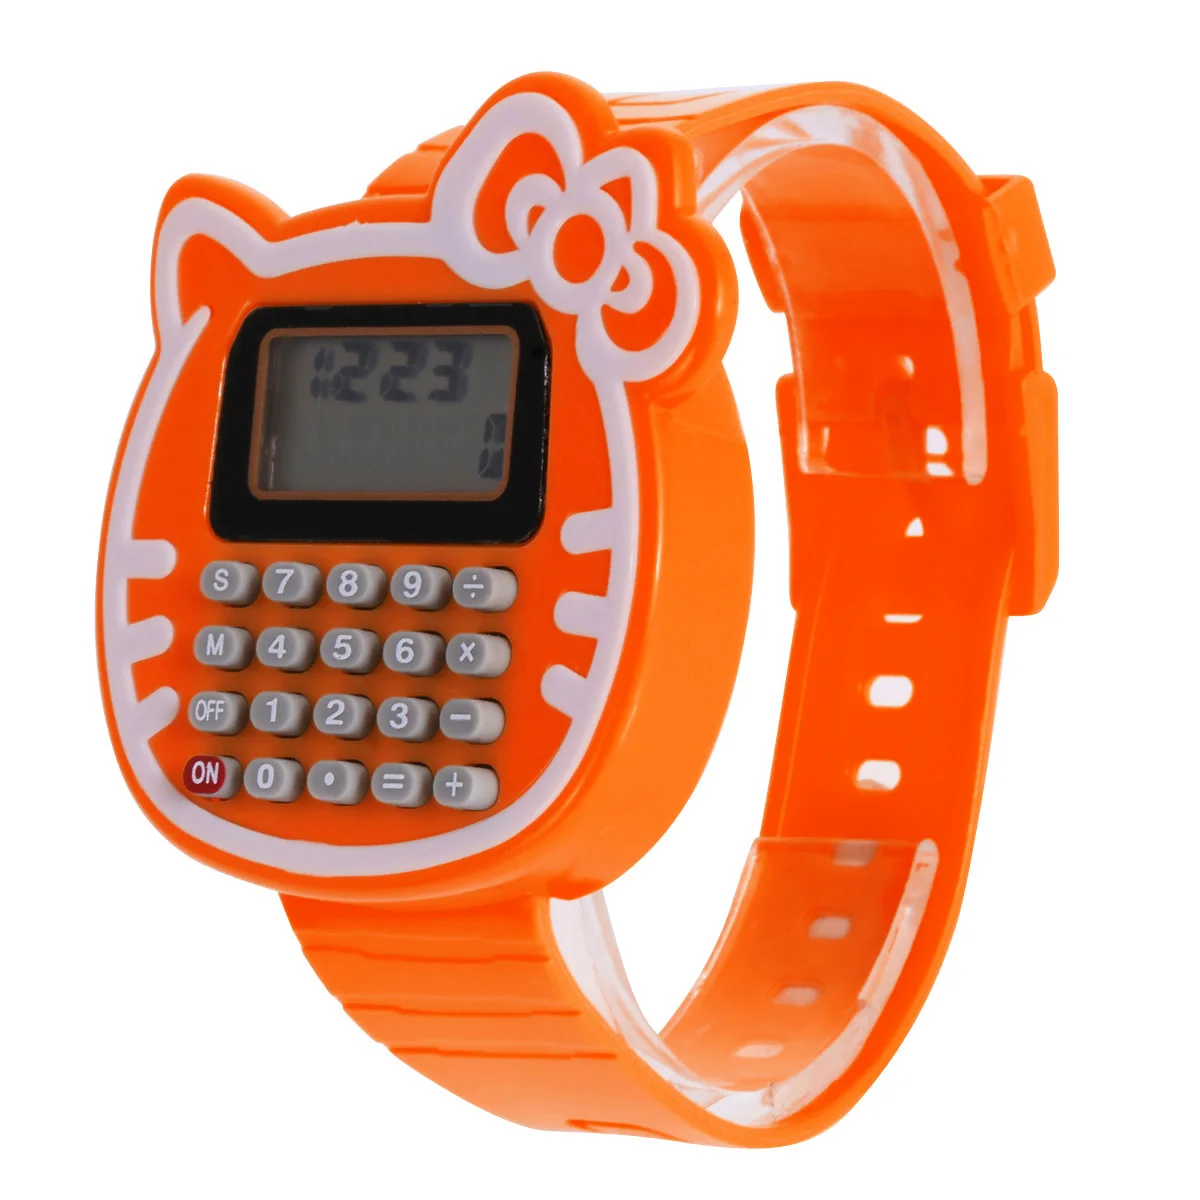 Детские цифровые часы для мальчиков и девочек, силиконовые часы с датой, можно использовать в качестве калькулятора, удобные для ребенка, наручные часы для экзамена, подарочные часы